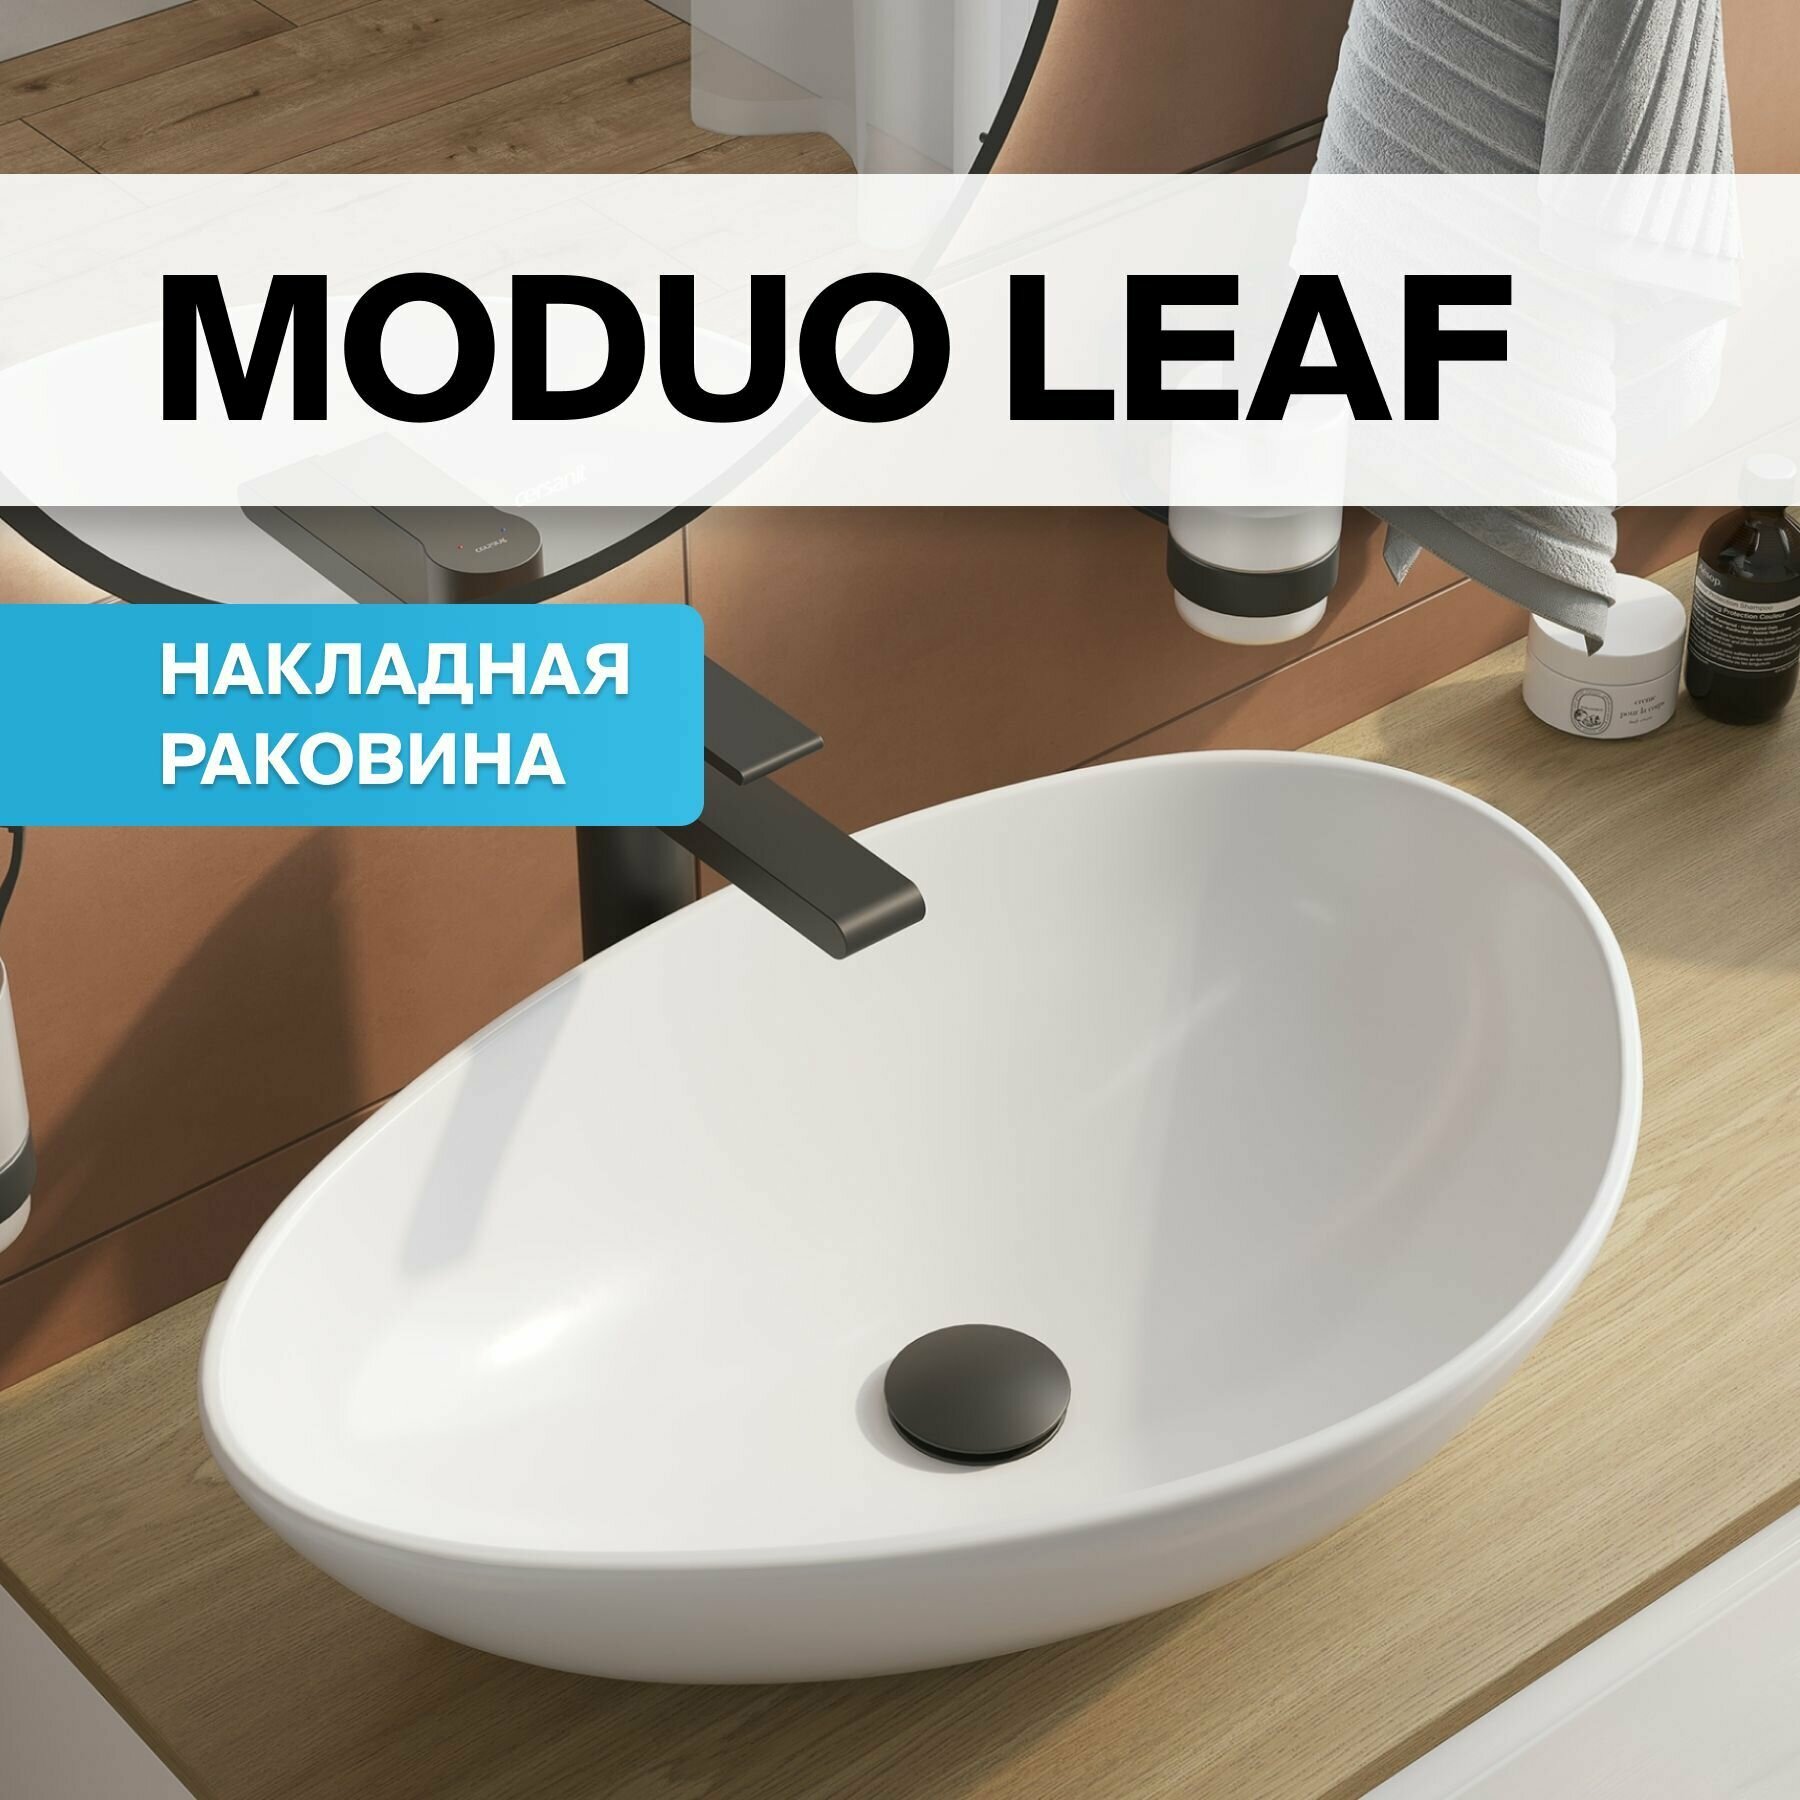 Раковина для ванной накладная на столешницу белая Cersanit MODUO 55 LEAF Гарантия 10 лет